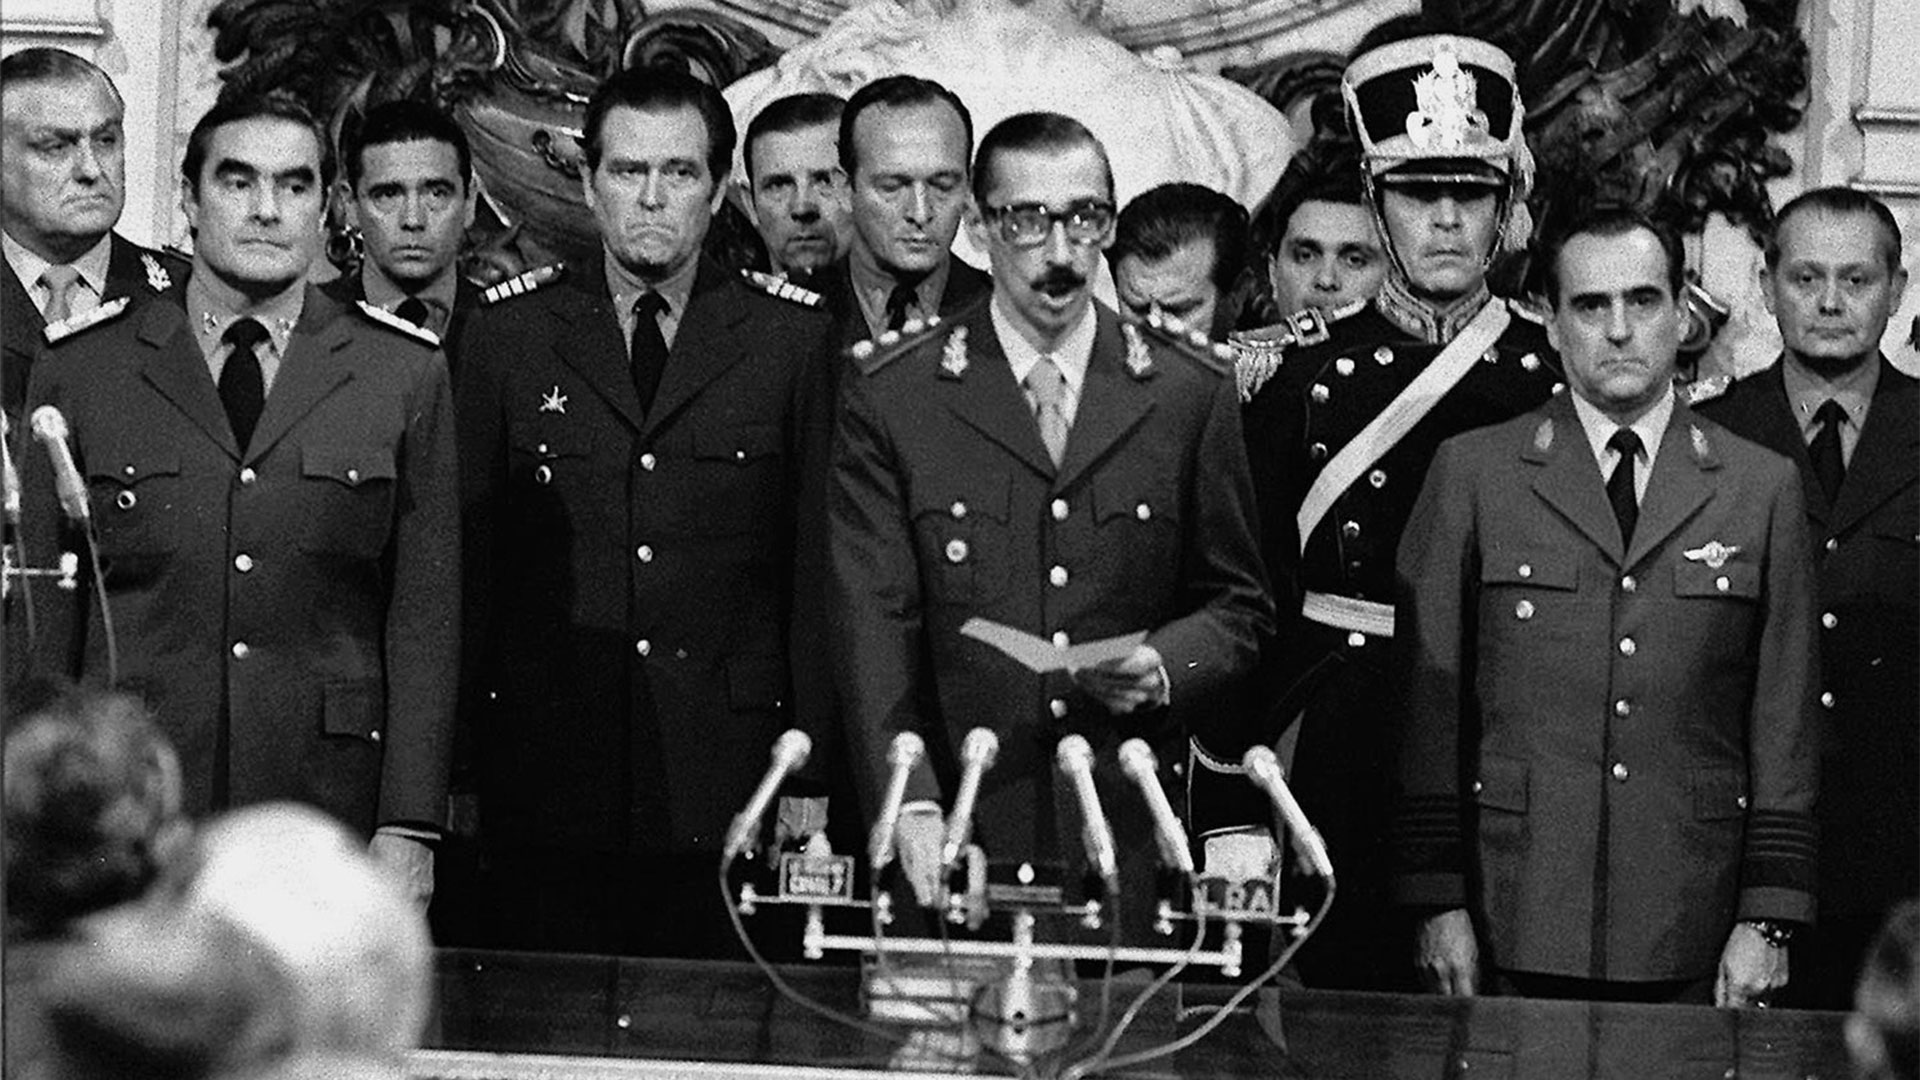 El 24 de marzo de 1976 se concretó el Golpe de Estado orquestado por la Junta Militar. Ese día se inauguró la dictadura más sangrienta de la historia argentina